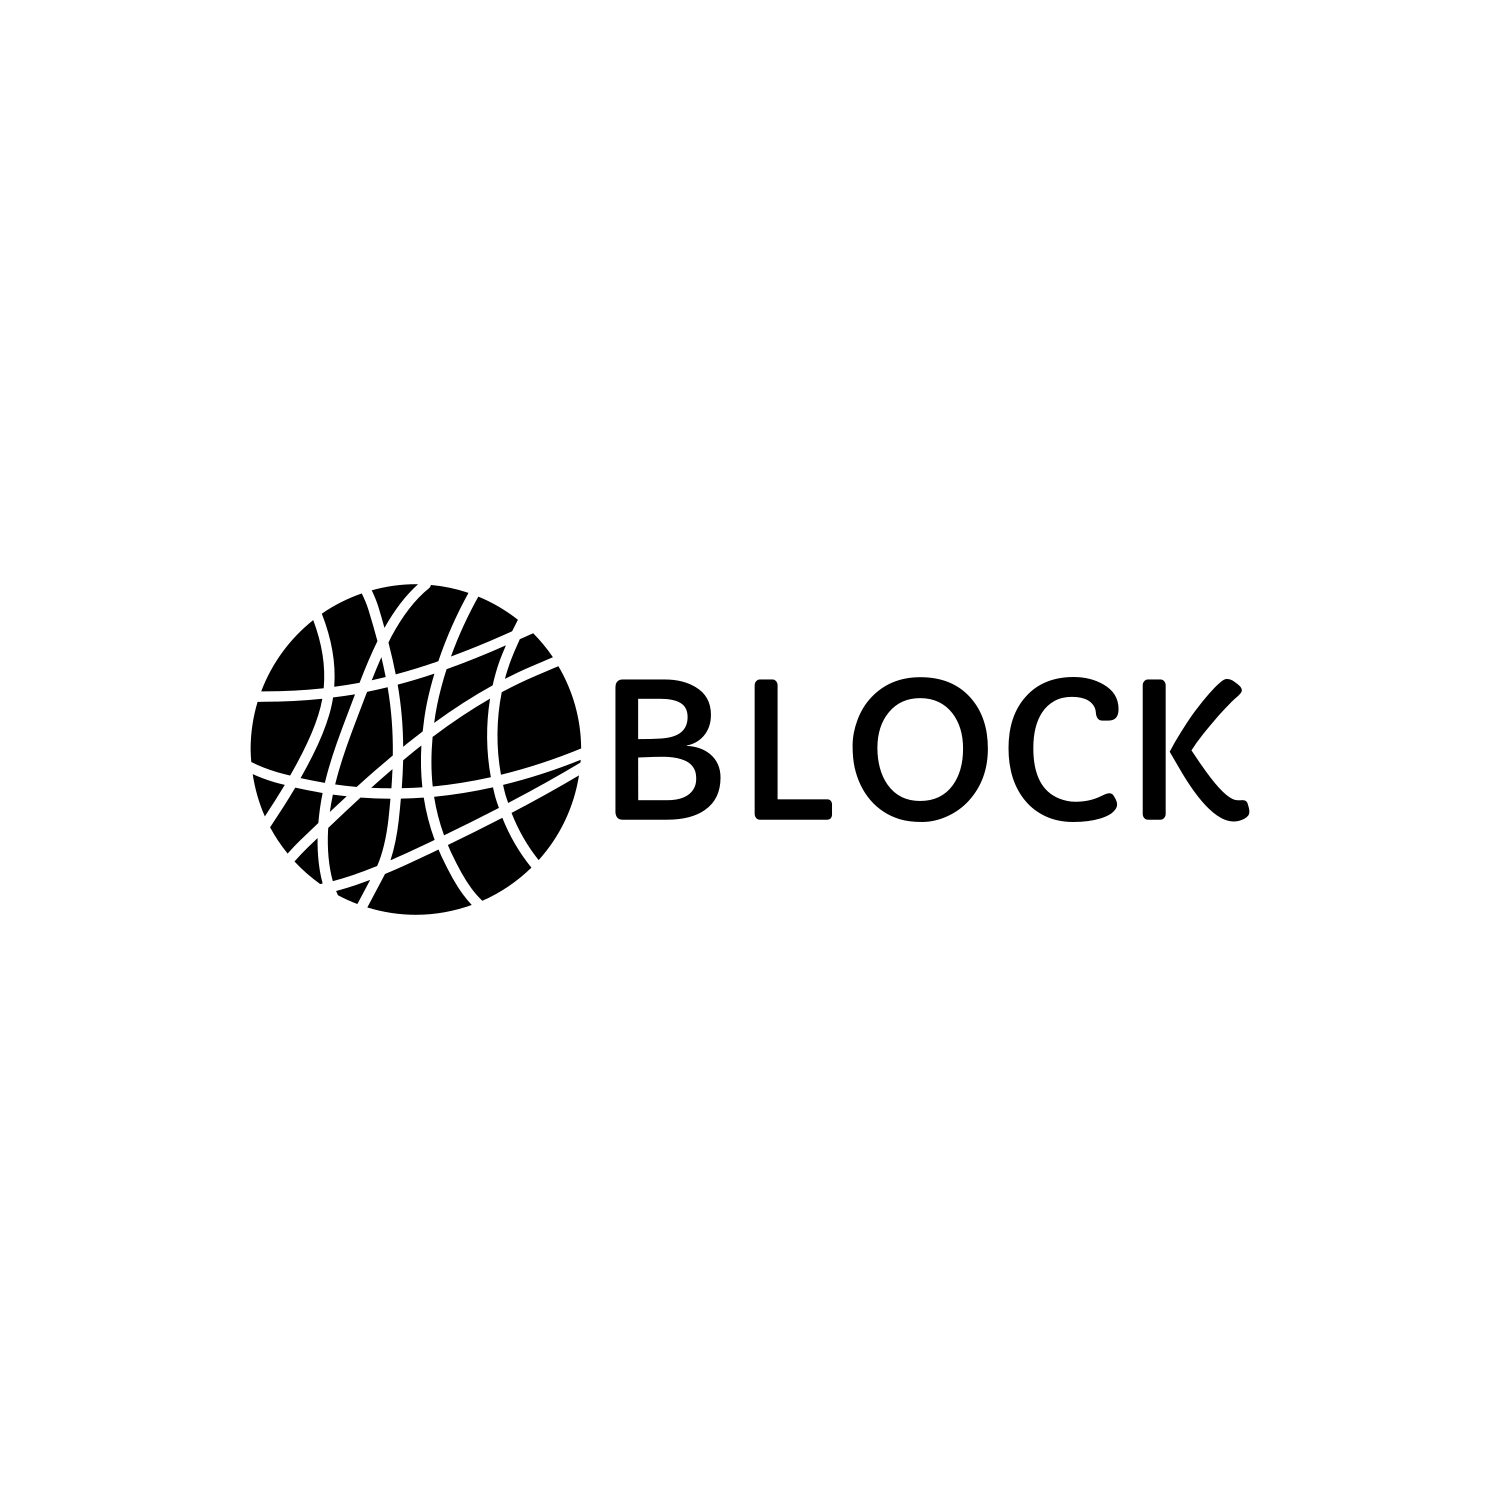 BlockWorks Logo Design cover image.